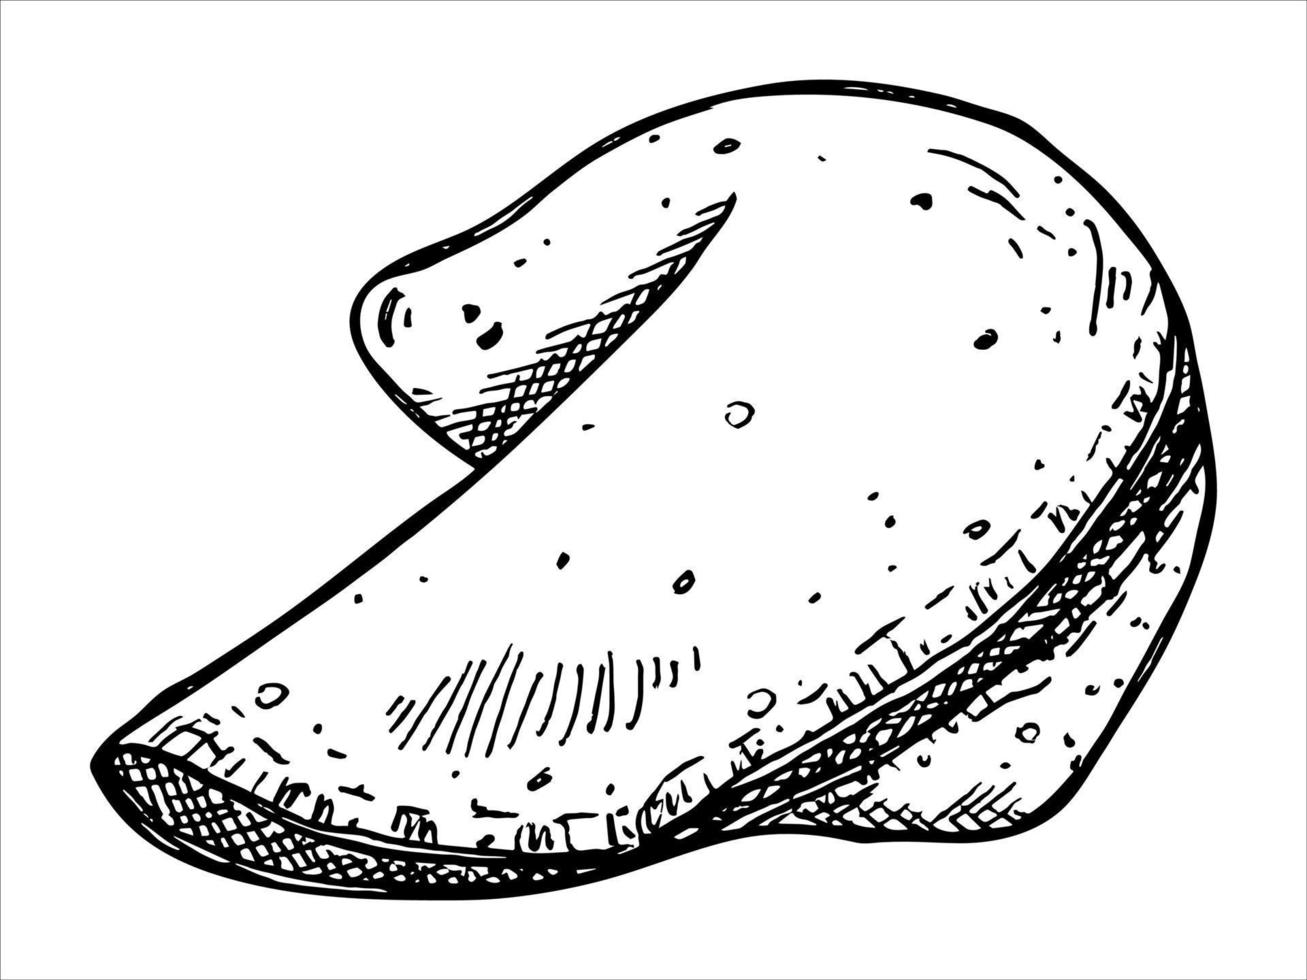 biscotto della fortuna cinese disegnato a mano di vettore isolato su sfondi bianchi. illustrazione del cibo. biscotto croccante con un pezzo di carta bianco all'interno. per stampa, web, design, arredamento, logo.